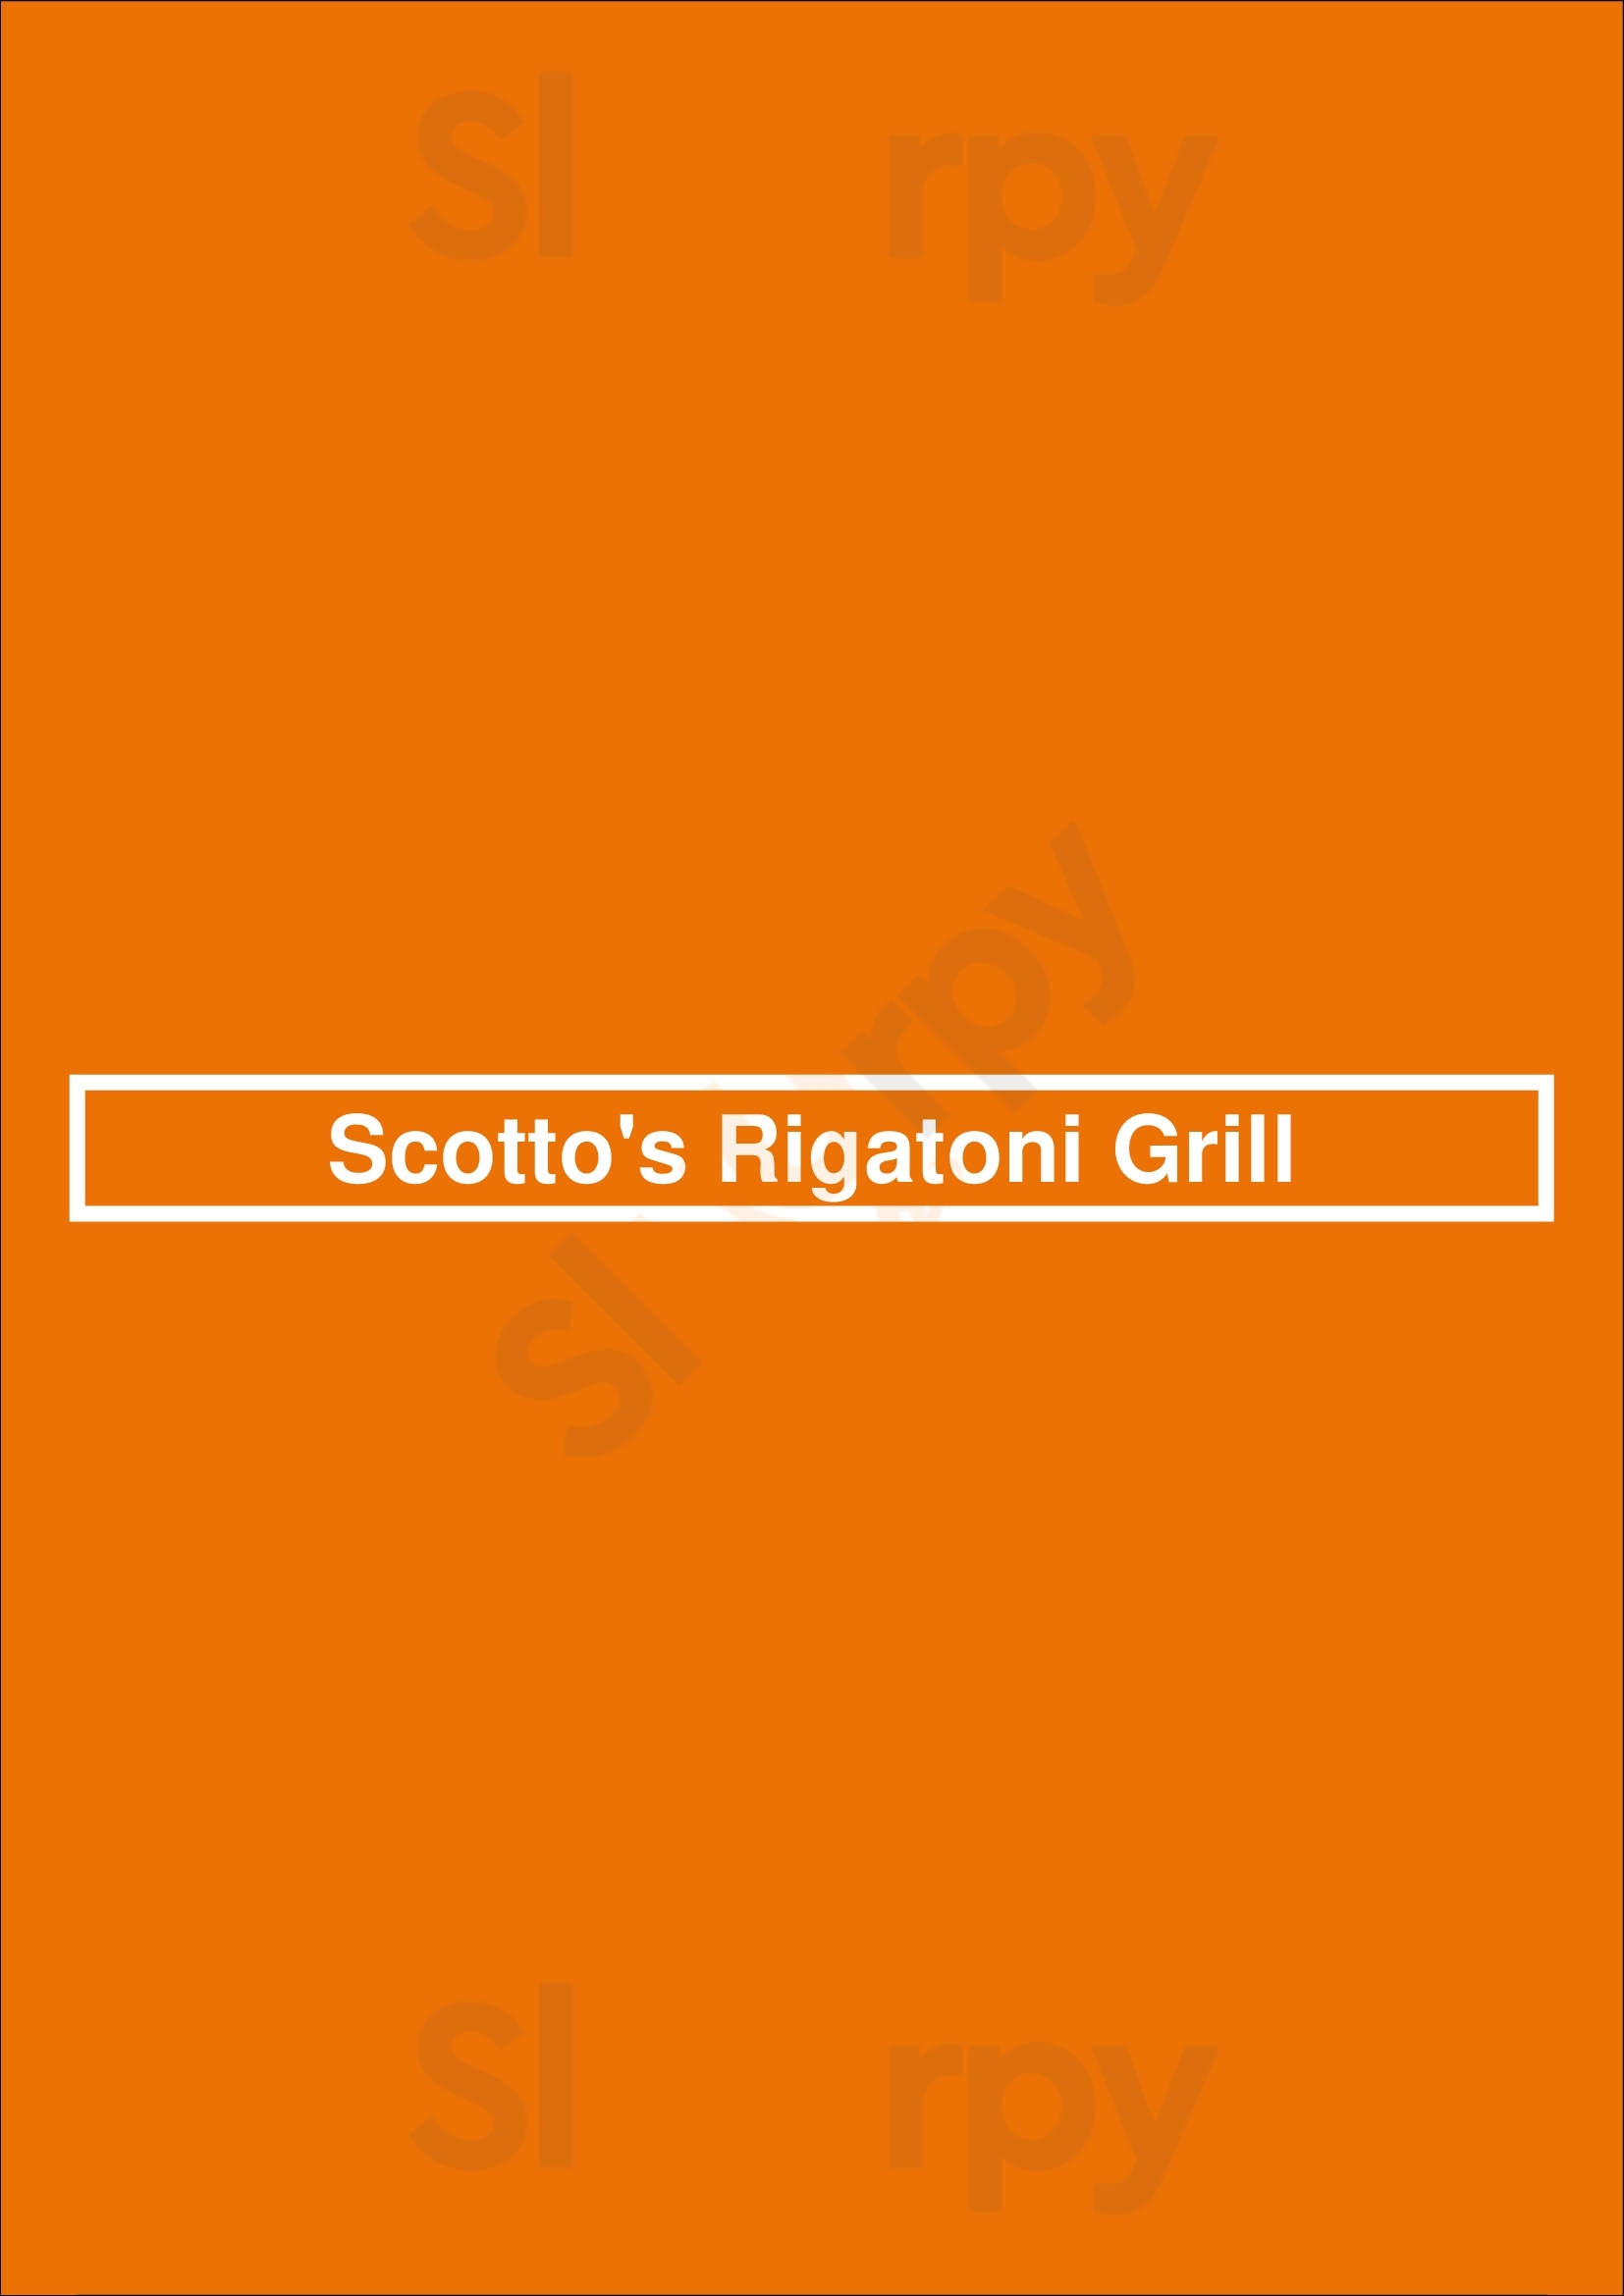 Scotto's Rigatoni Grill Ashburn Menu - 1